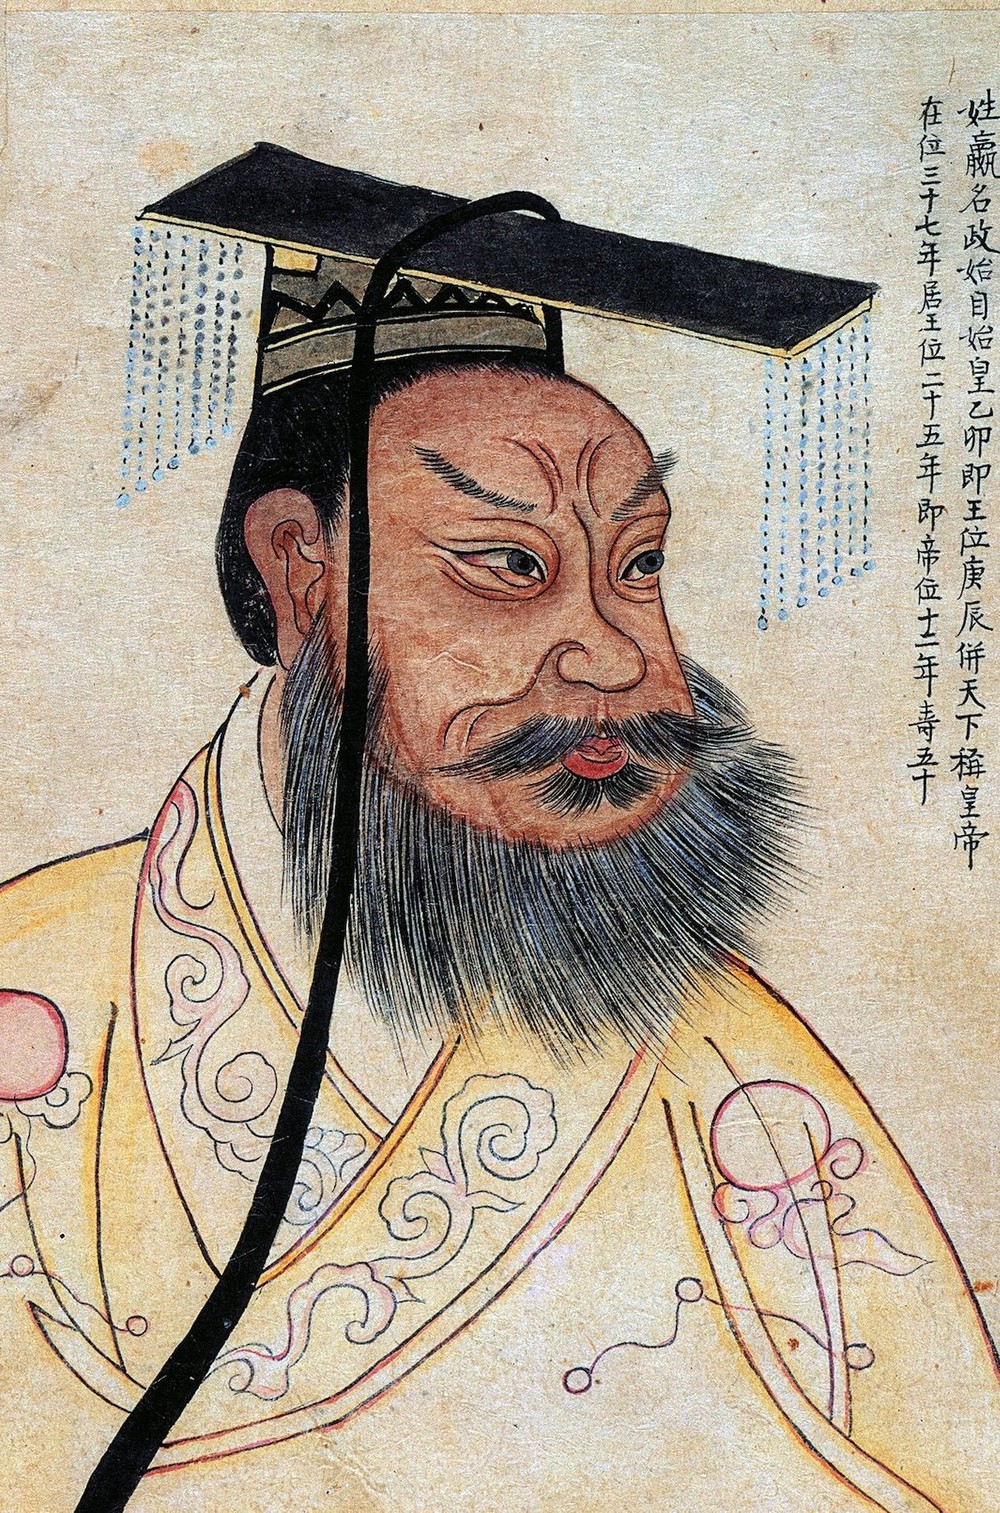 Ngày này năm xưa: Hoàng đế khét tiếng nhất lịch sử Trung Quốc ra đời, để lại thành tựu muôn đời nhưng tiếng ác cũng ngàn năm - Ảnh 1.